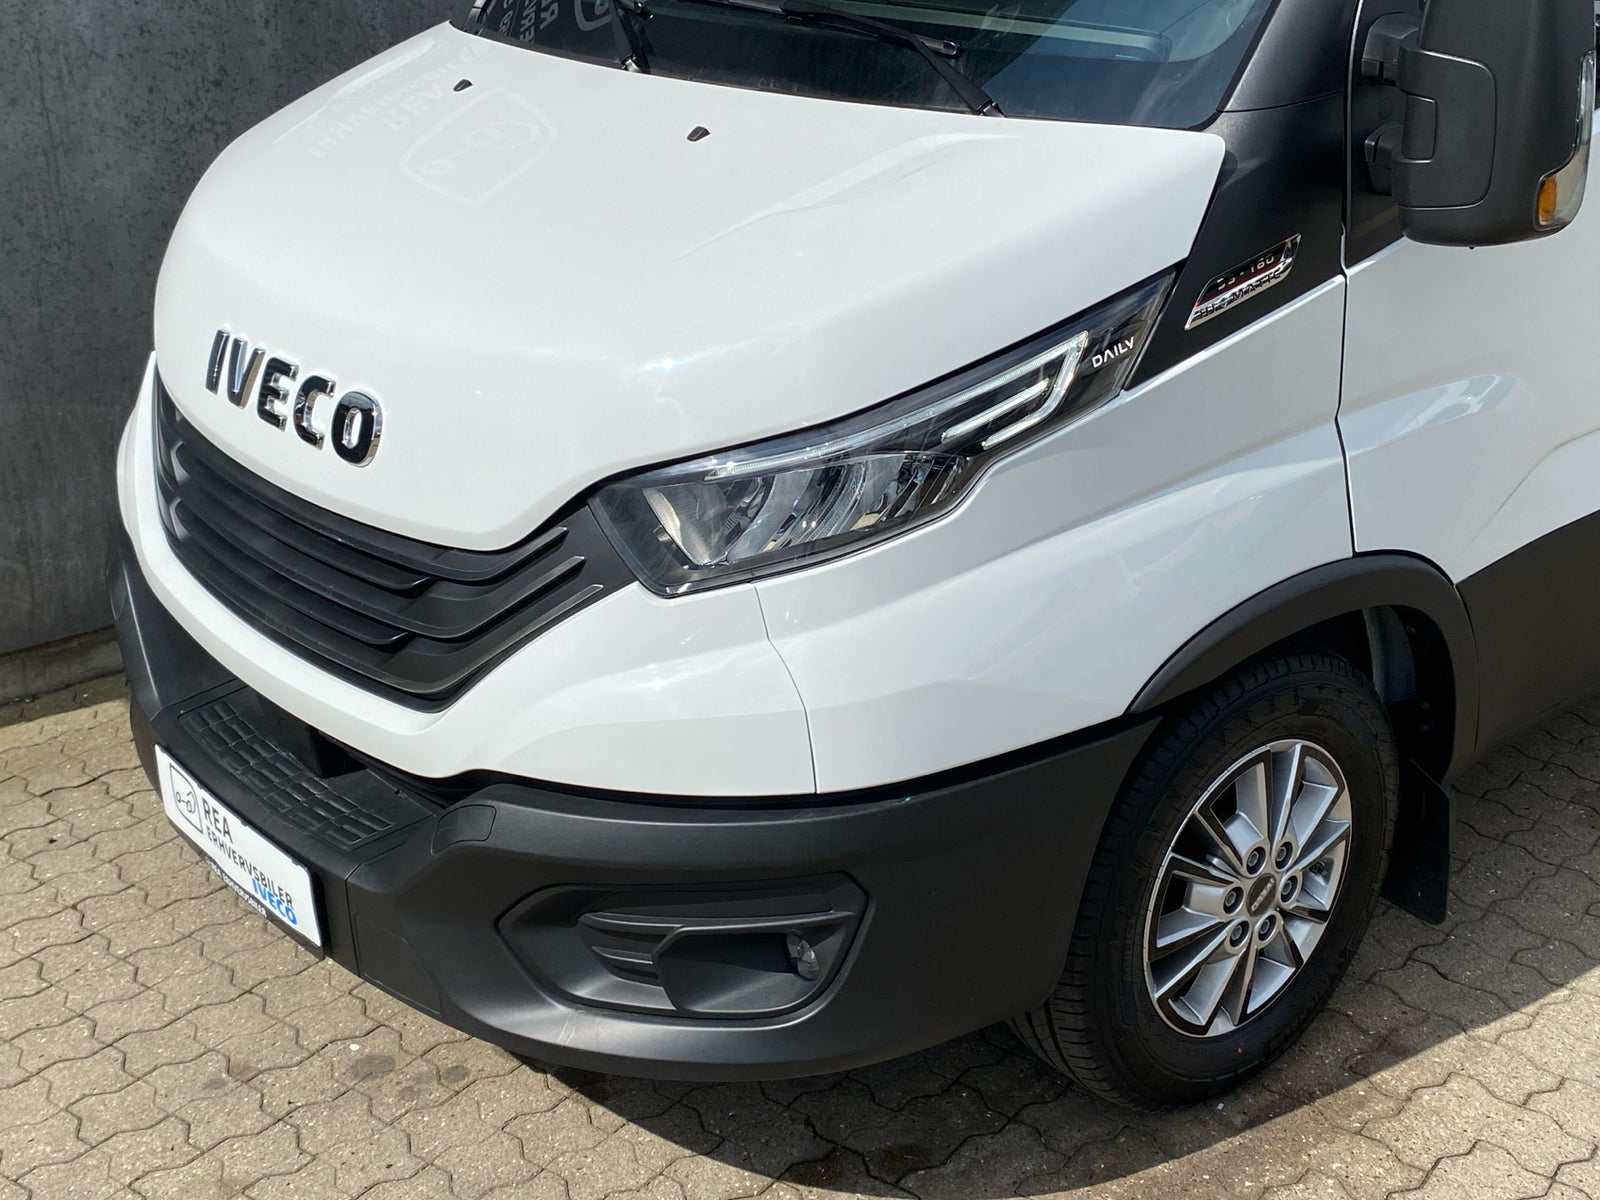 Iveco Daily 3,0 35S18 12m³ Van AG8 d Diesel aut. Automatgear